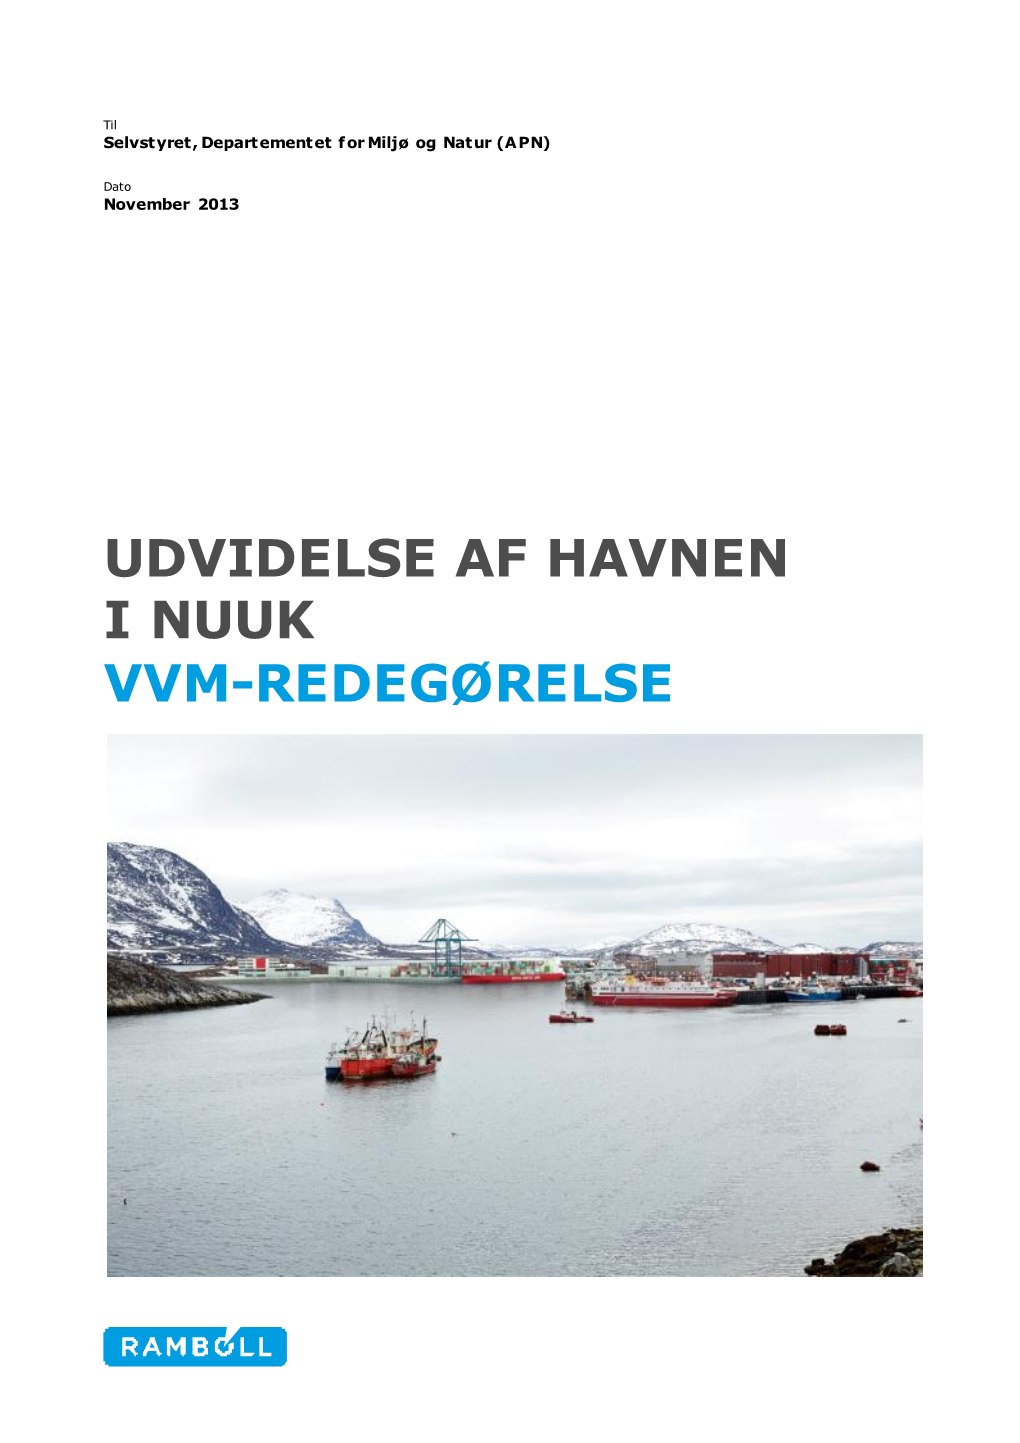 VVM-Redegoerelse DK